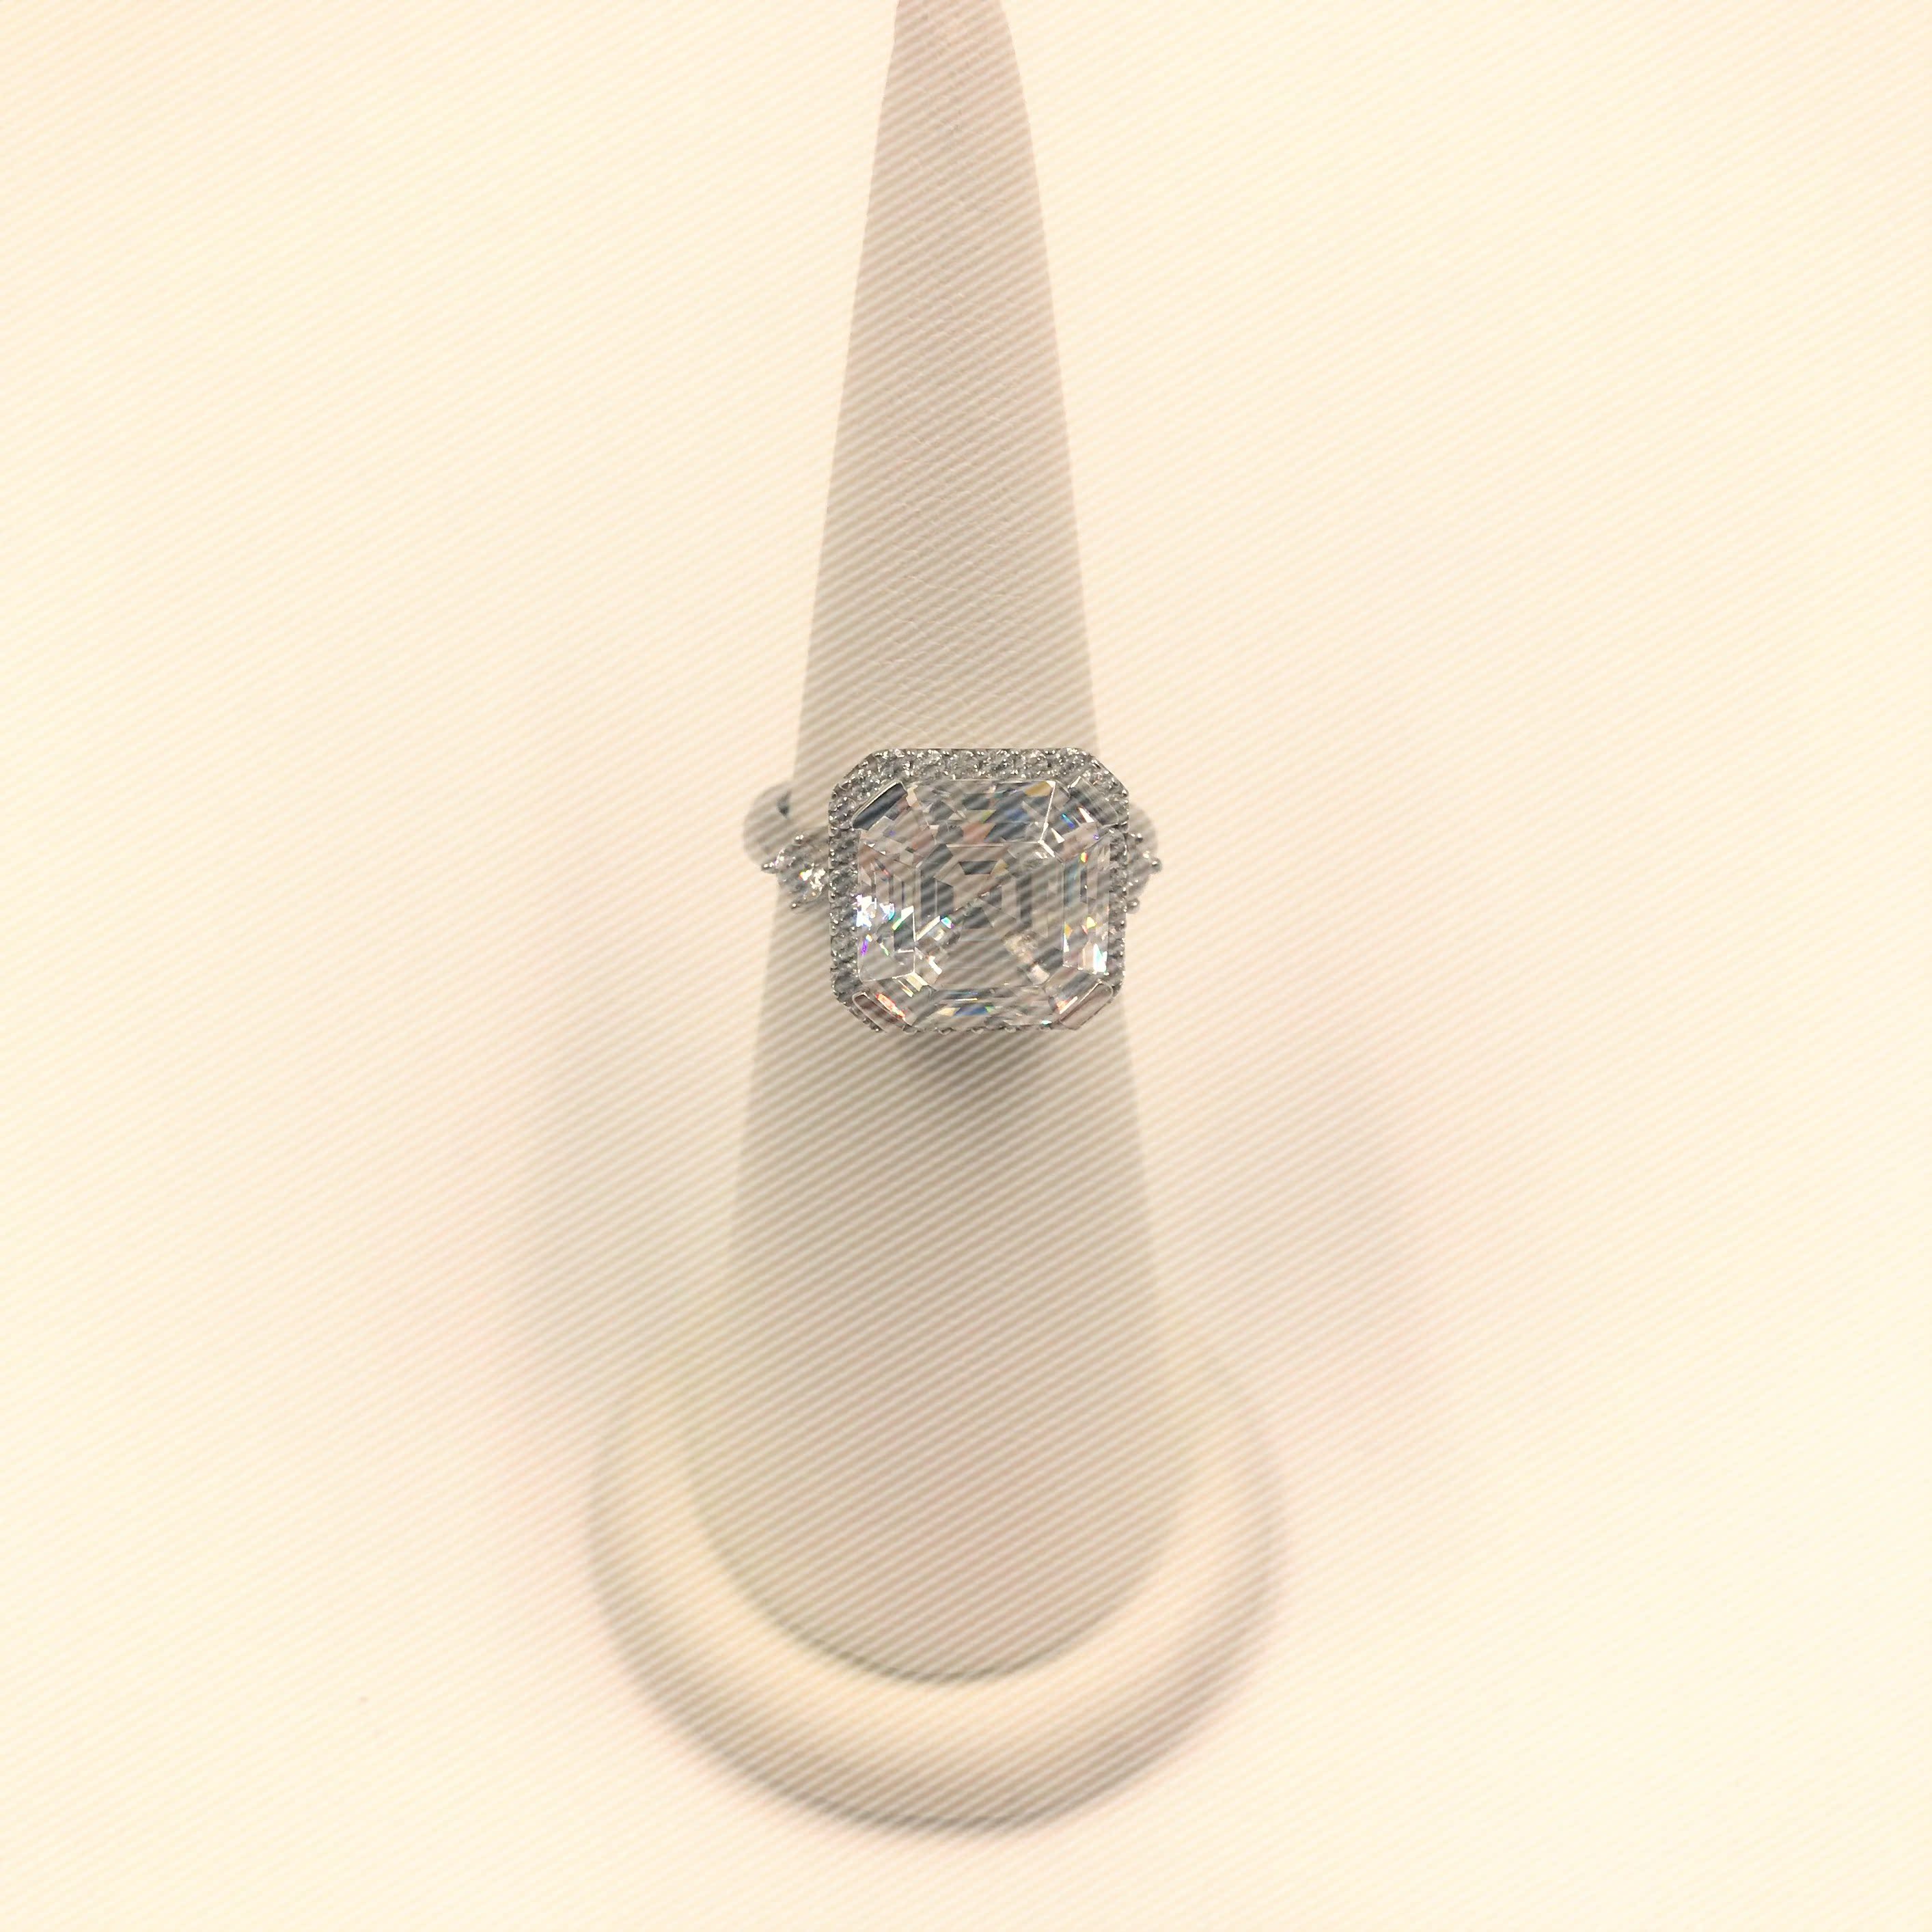 Elsalee925纯银18K镀金水钻镶嵌项链戒指耳环套装